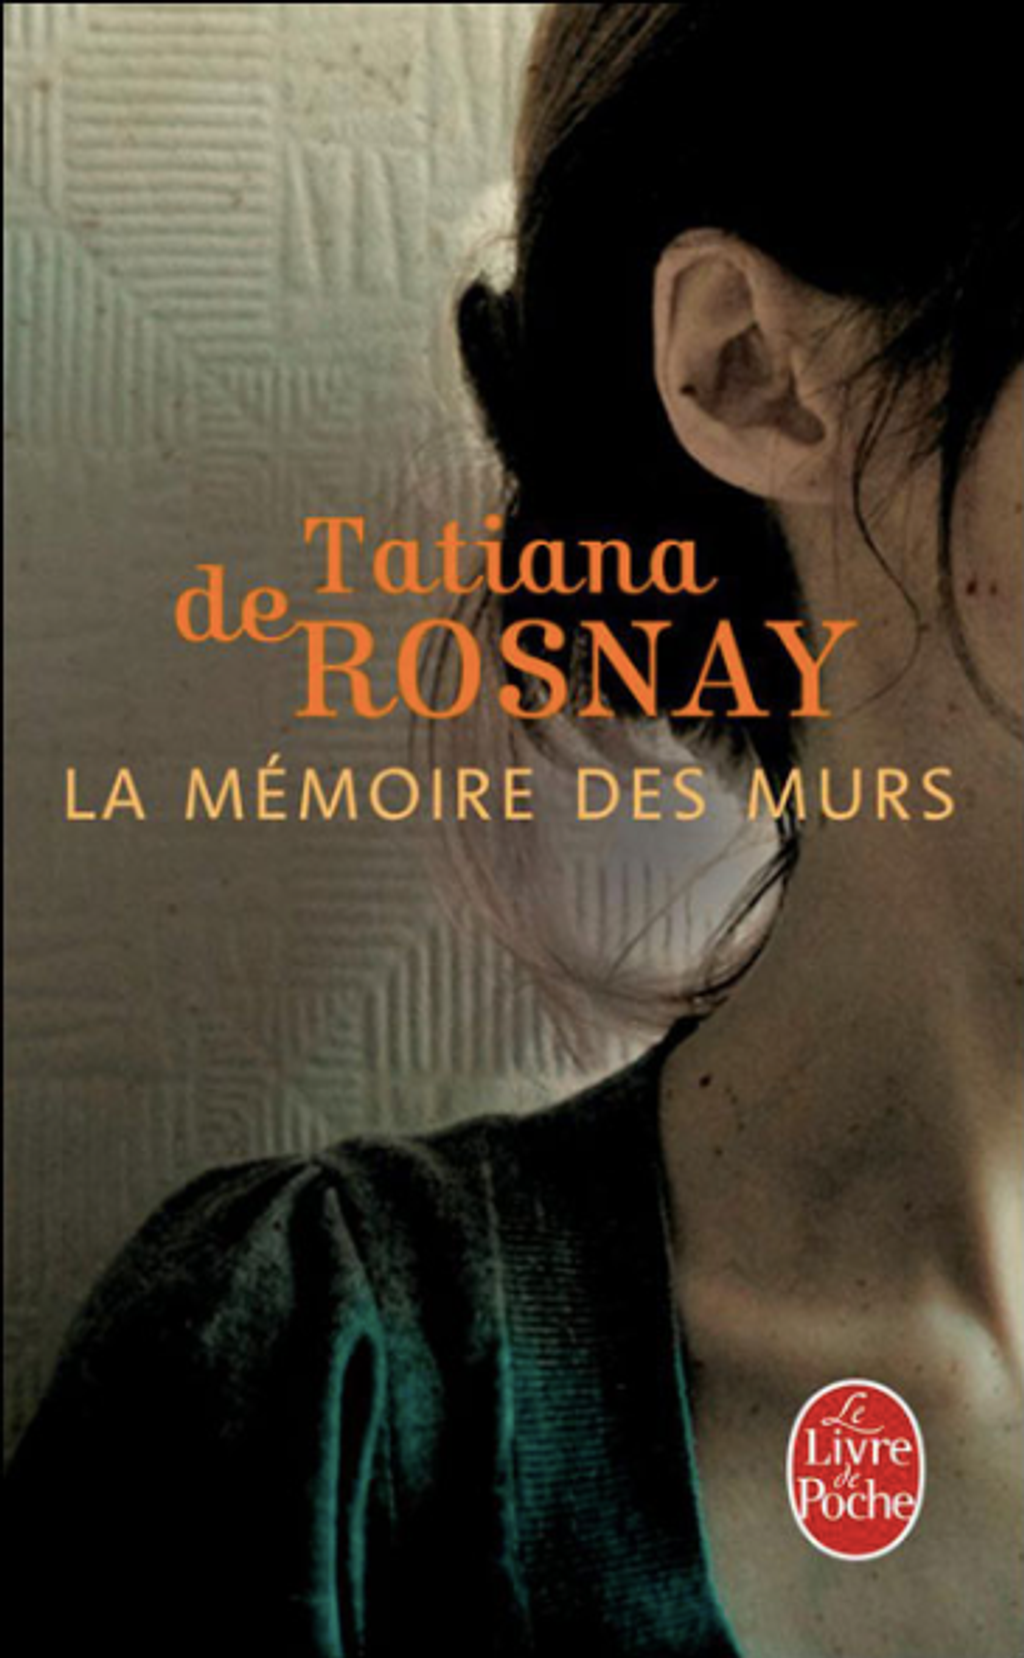 la mémoire des murs - Tatiana de Rosnay - M - 17.png